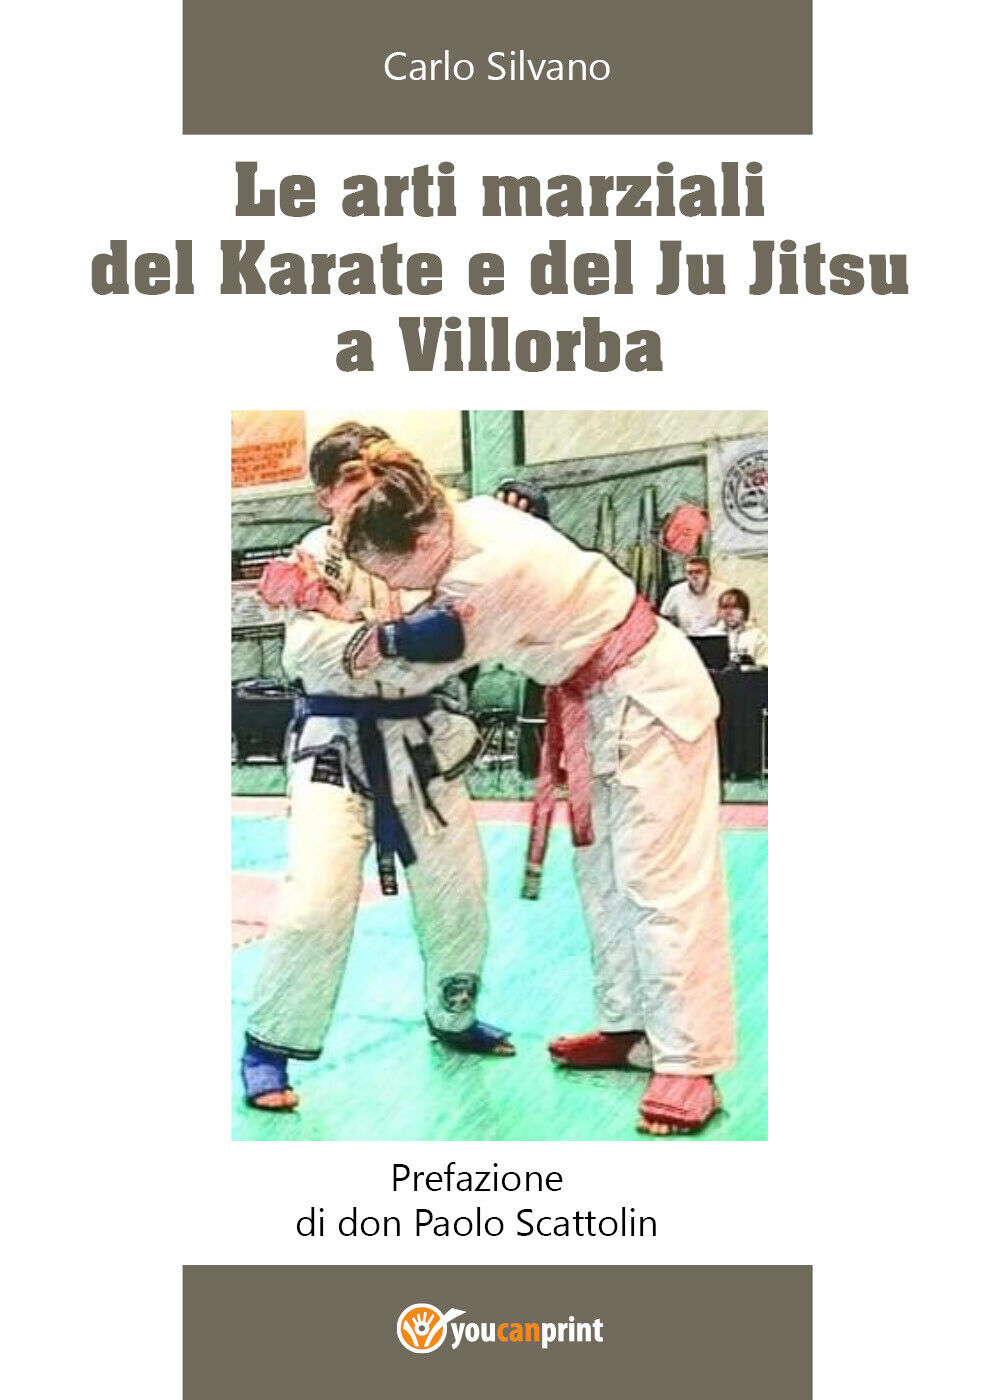 Le arti marziali del Karate e del Ju Jitsu a Villorba - Carlo Silvano,  2020,  Y